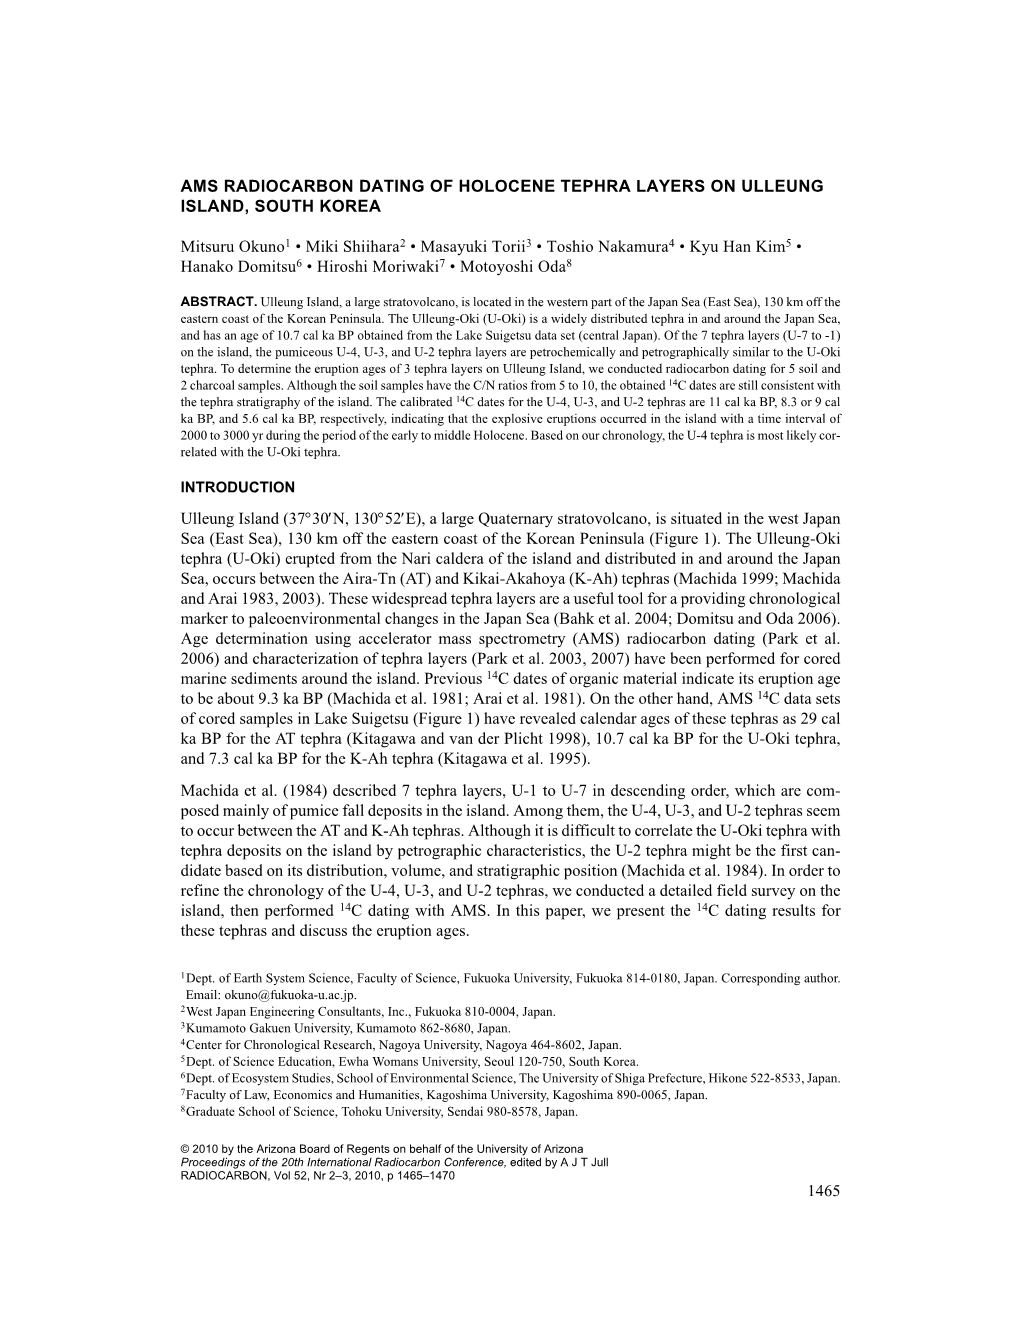 Ams Radiocarbon Dating of Holocene Tephra Layers on Ulleung Island, South Korea